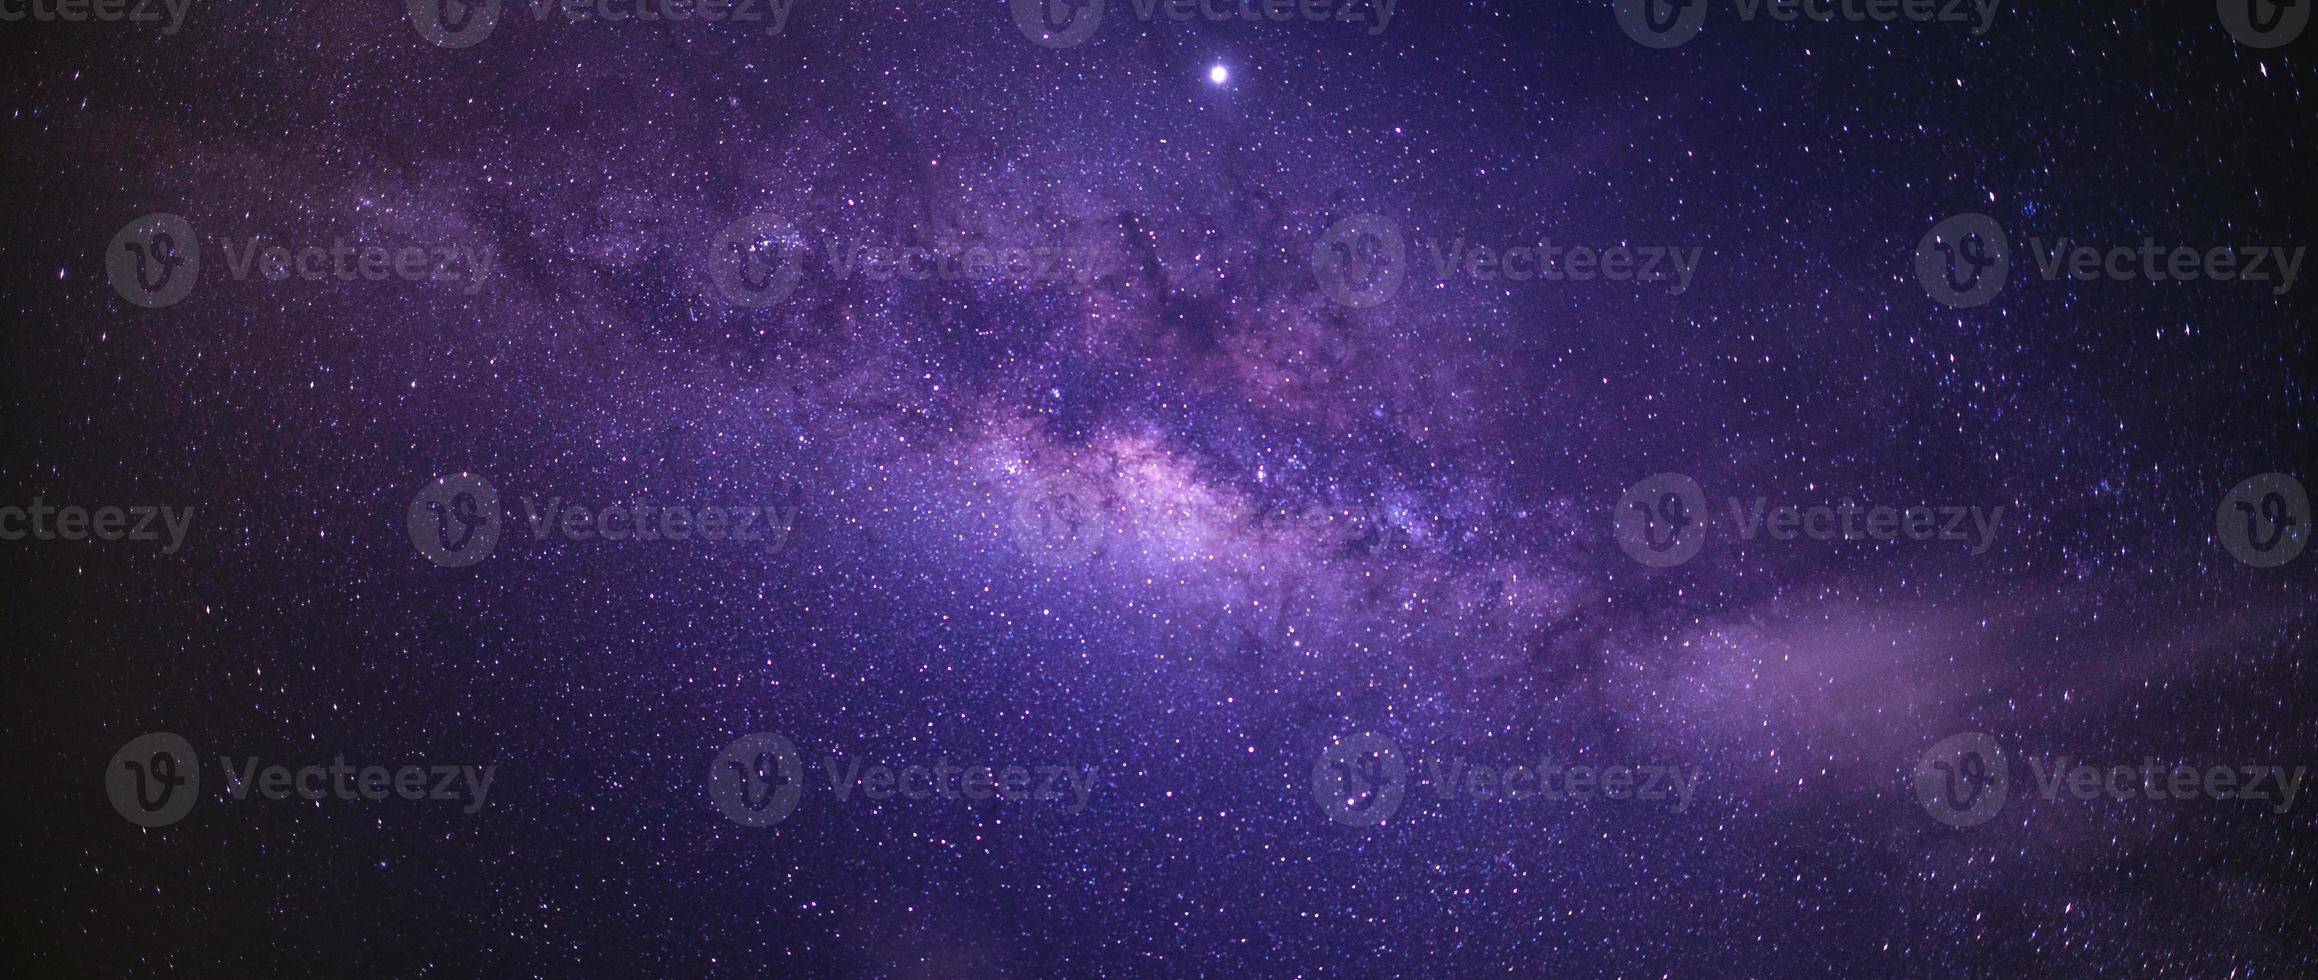 paisagem com a Via Láctea. céu noturno com estrelas. foto